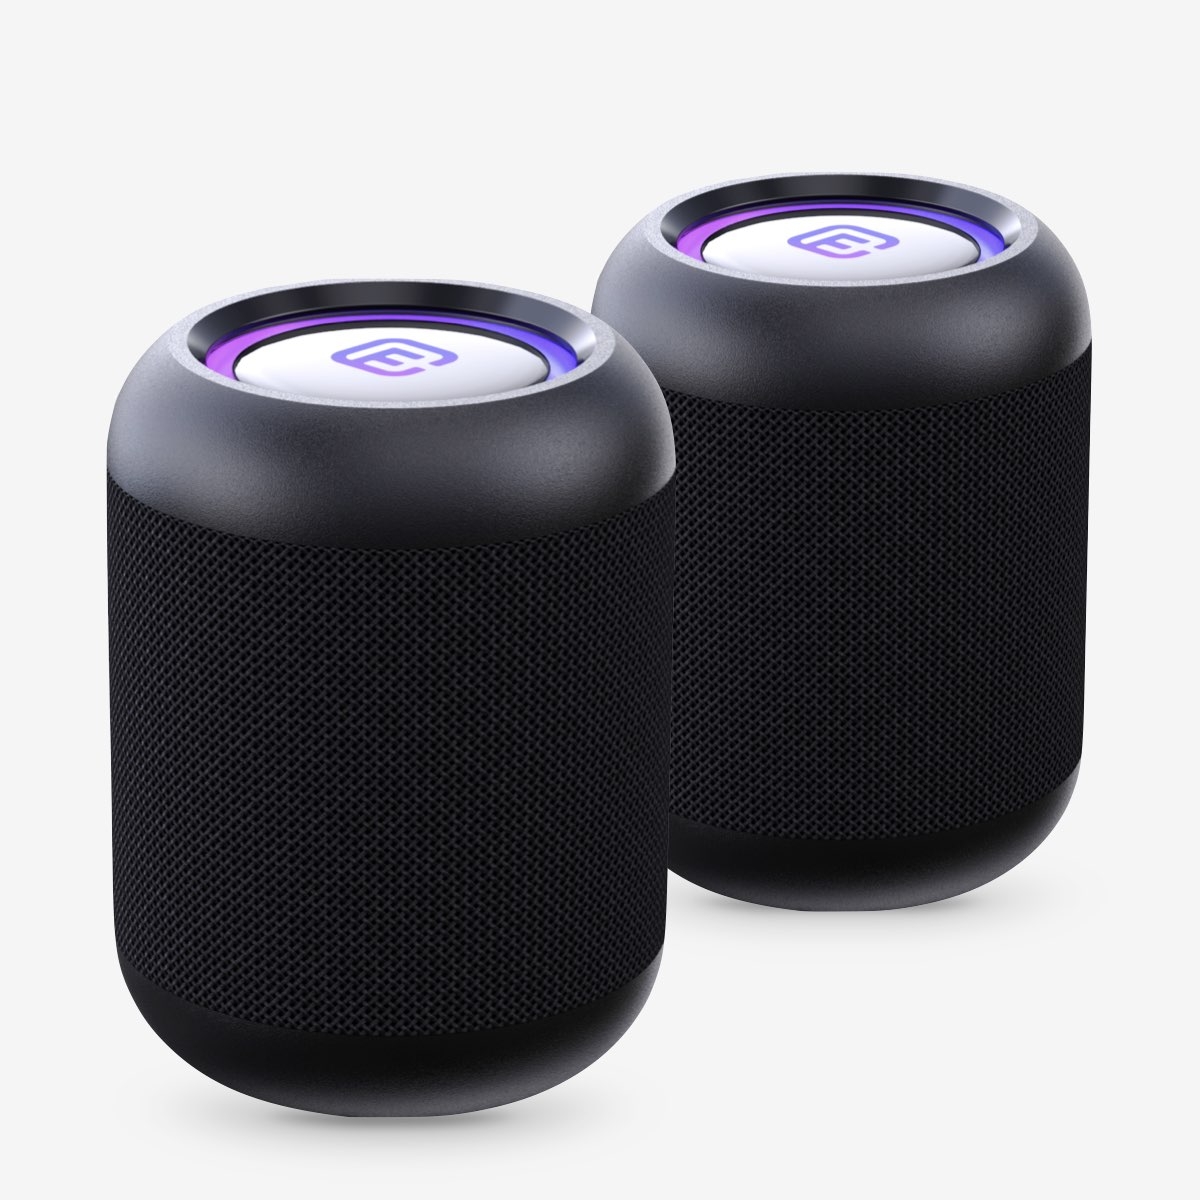 2台セット〉コンパクト 防水防塵対応 Bluetooth スピーカー | Giftpad